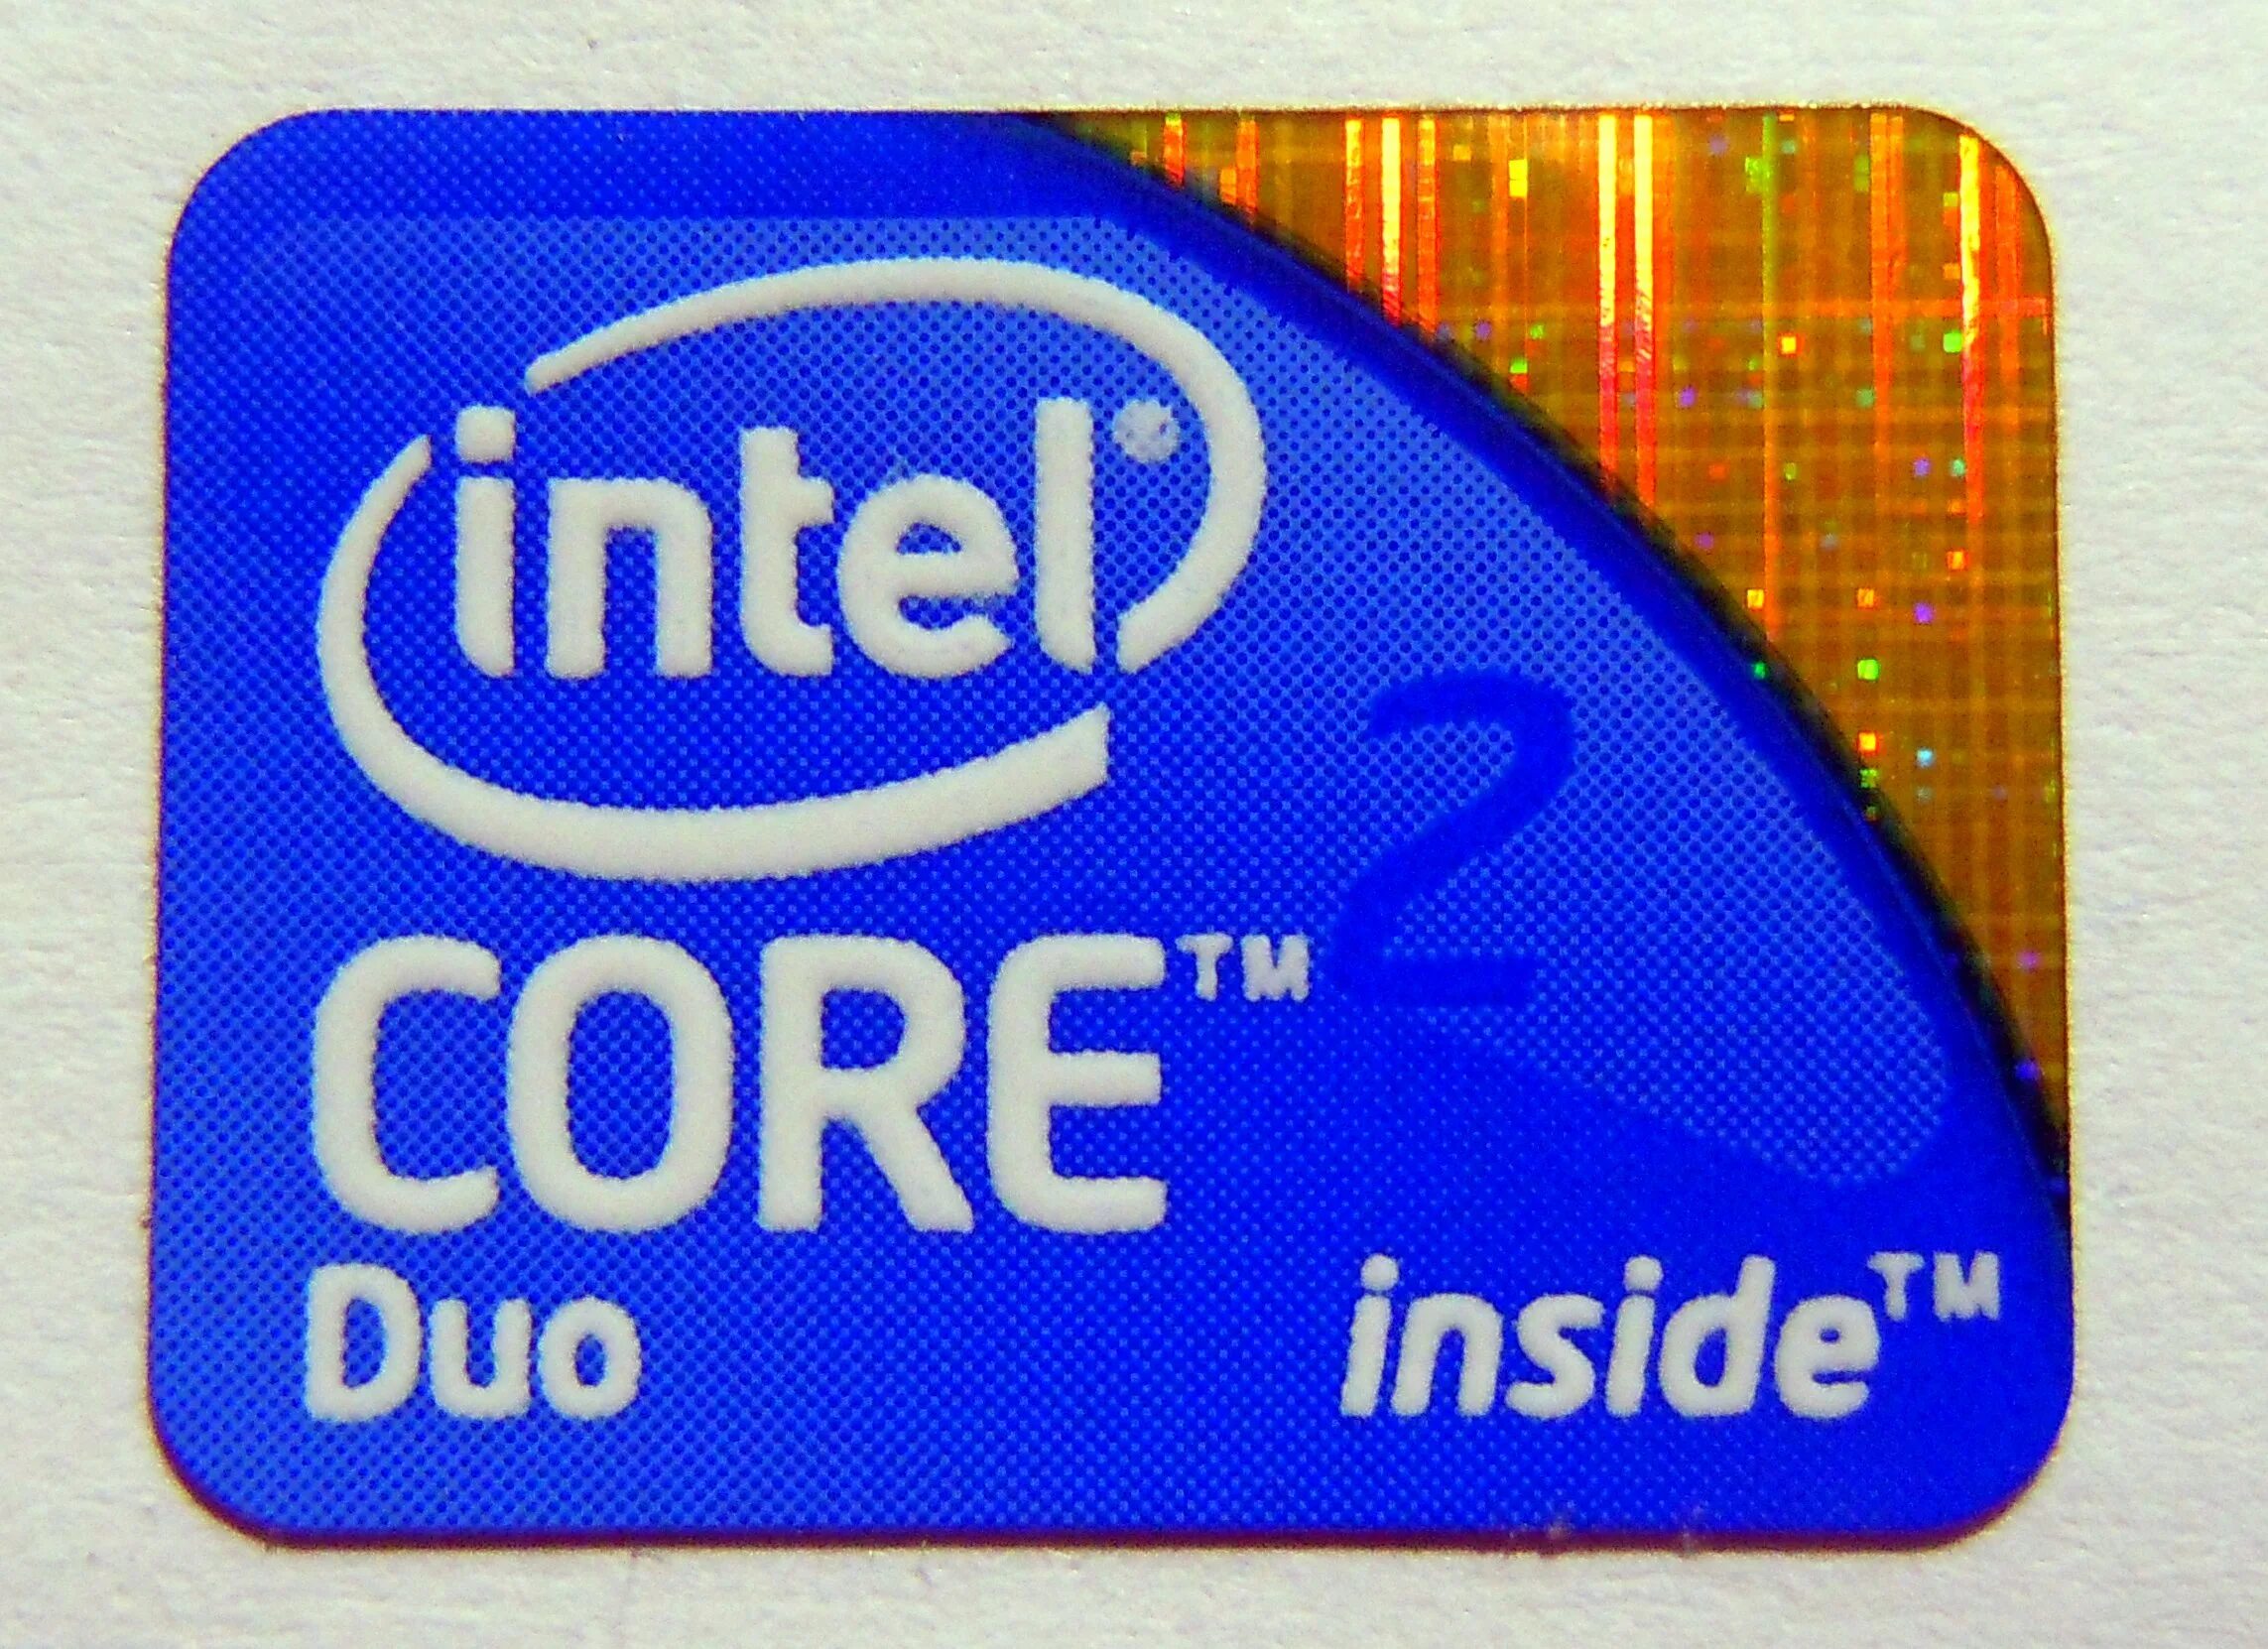 Процессор интел коре 2 дуо. Наклейка Intel Core 2 Duo. Intel Core 2 Duo logo. Intel Core 2 Duo inside. Интел 2 дуо.